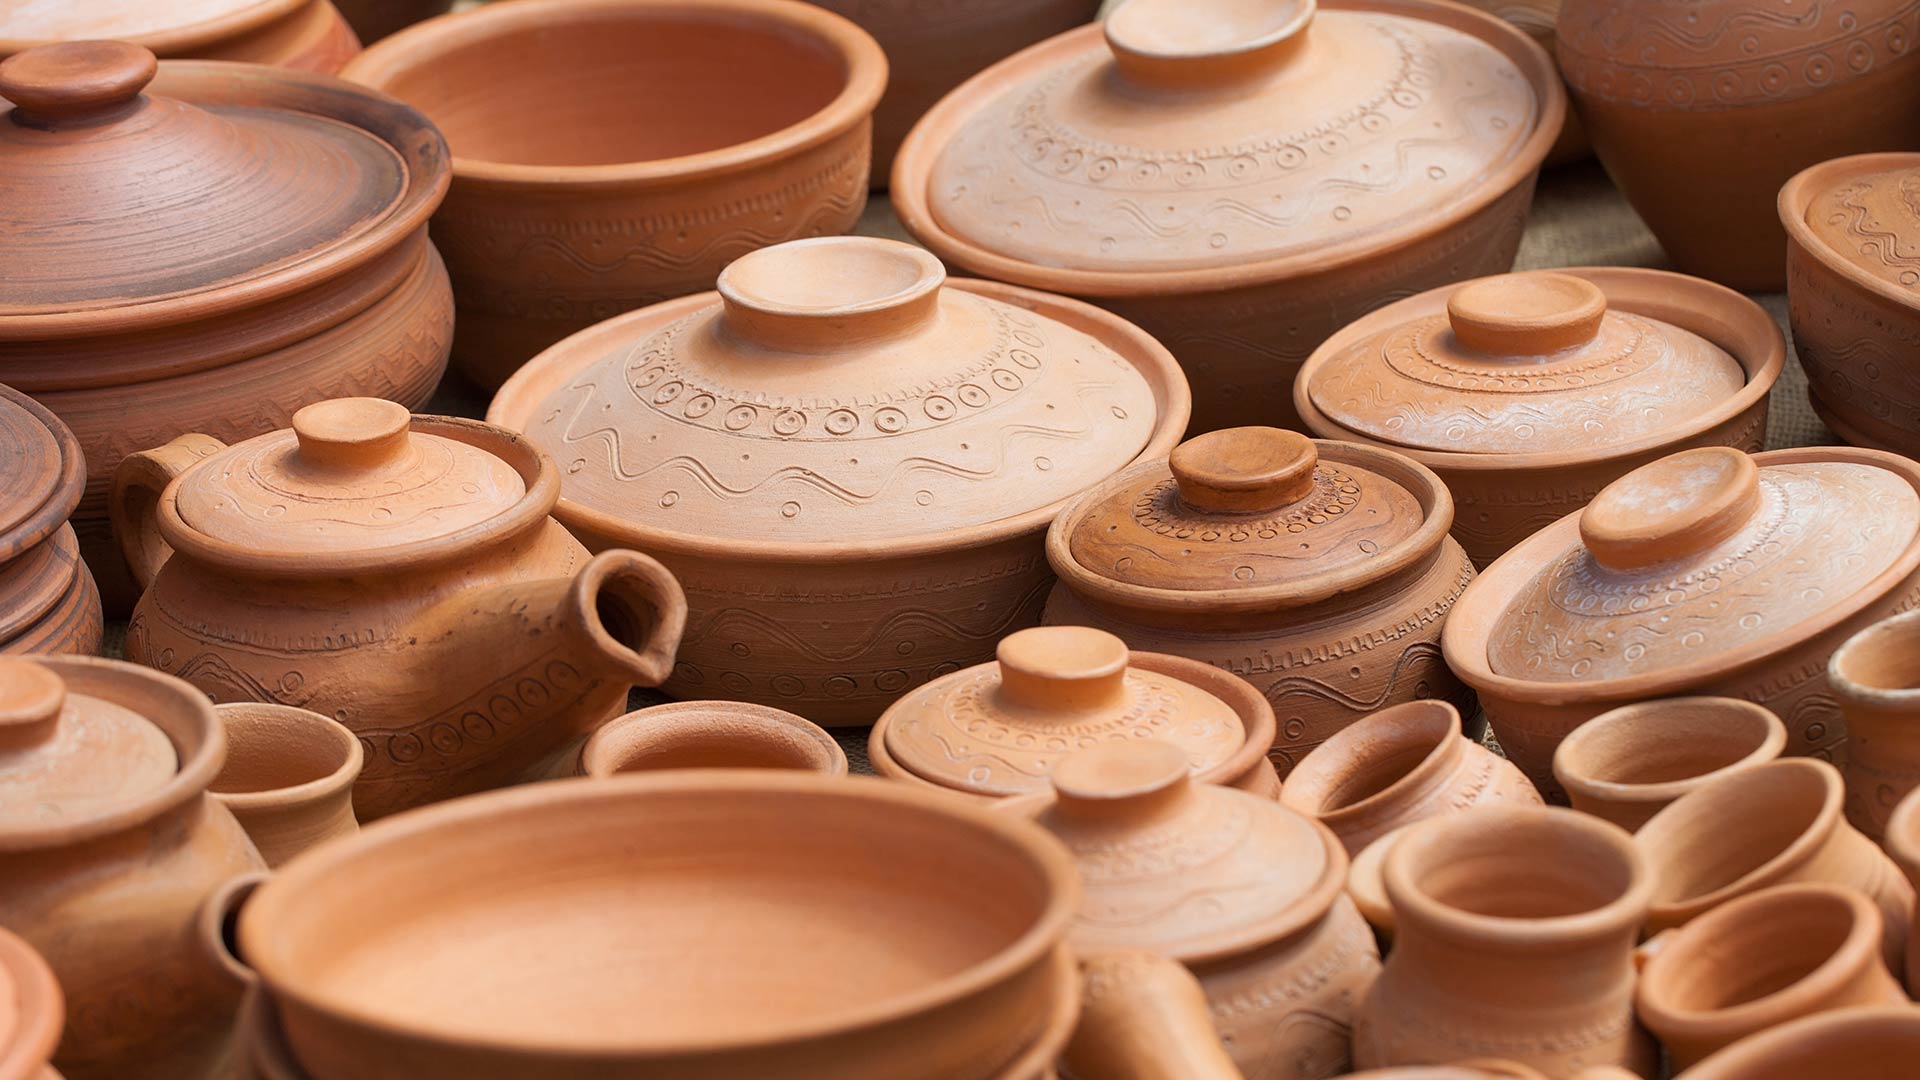 ceramics-origins-evolution-ceramic-decoration